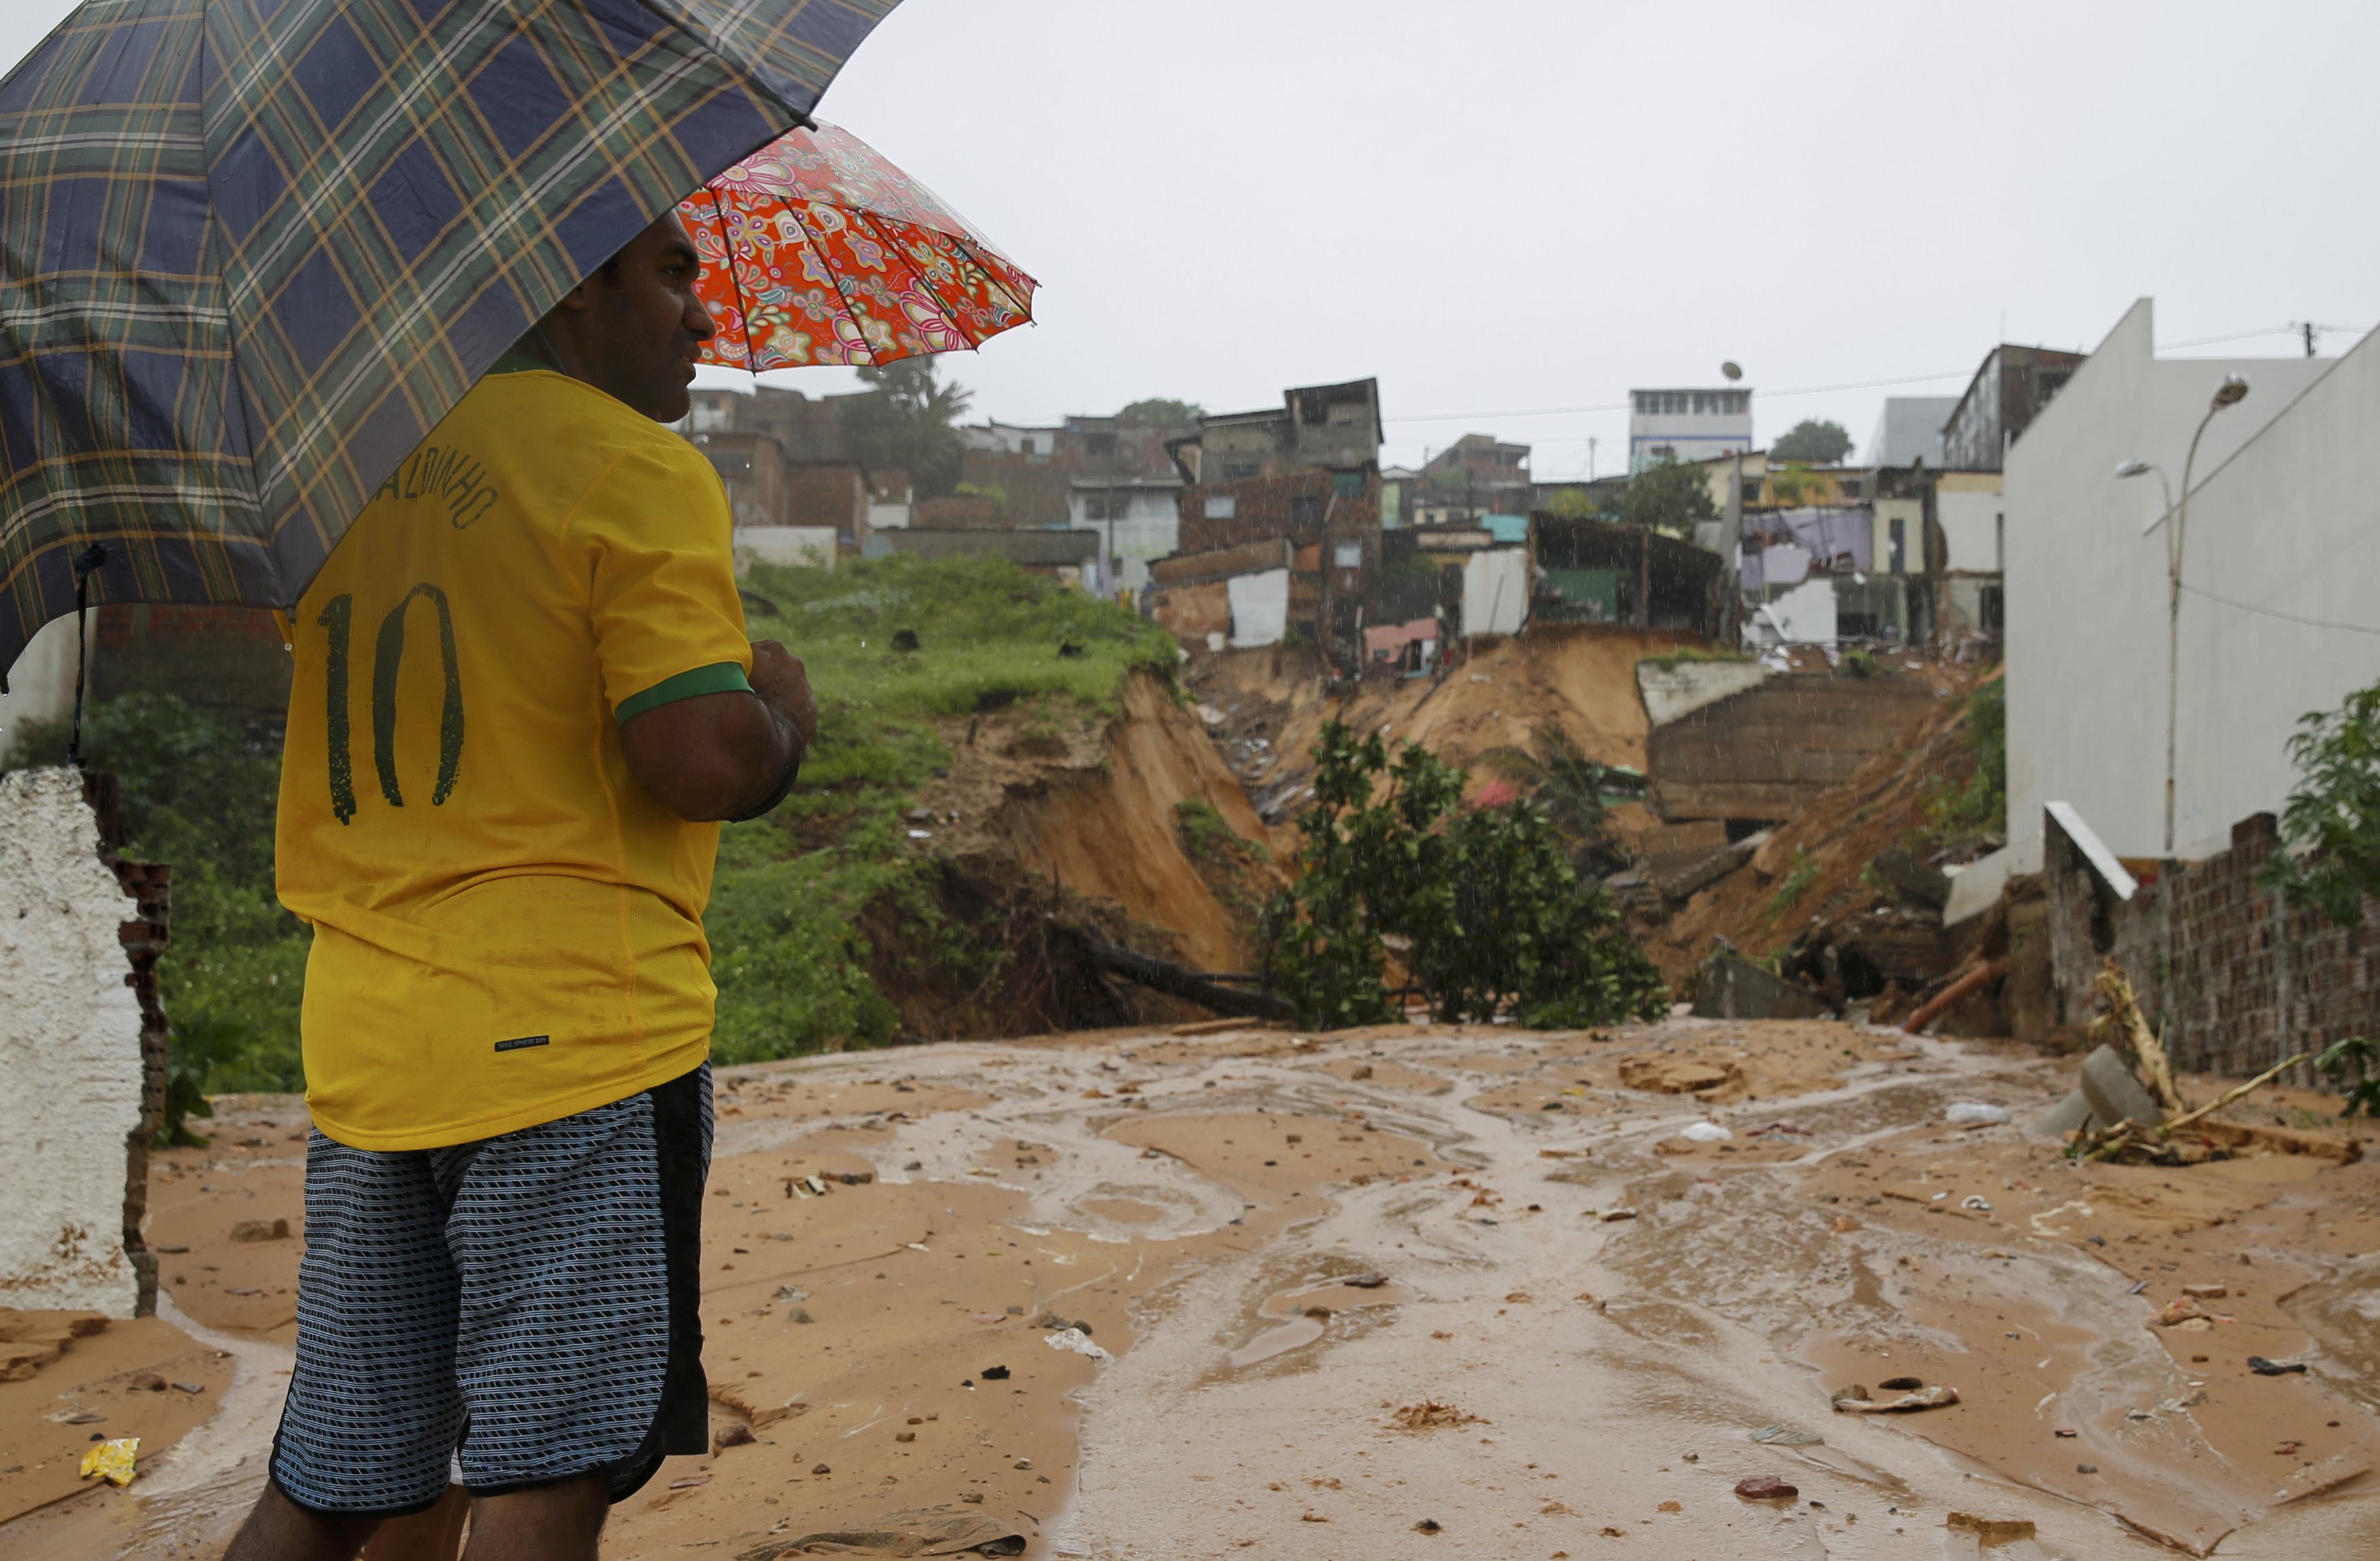 Βραζιλία: Σε κατάσταση έκτακτης ανάγκης η πόλη Νατάλ